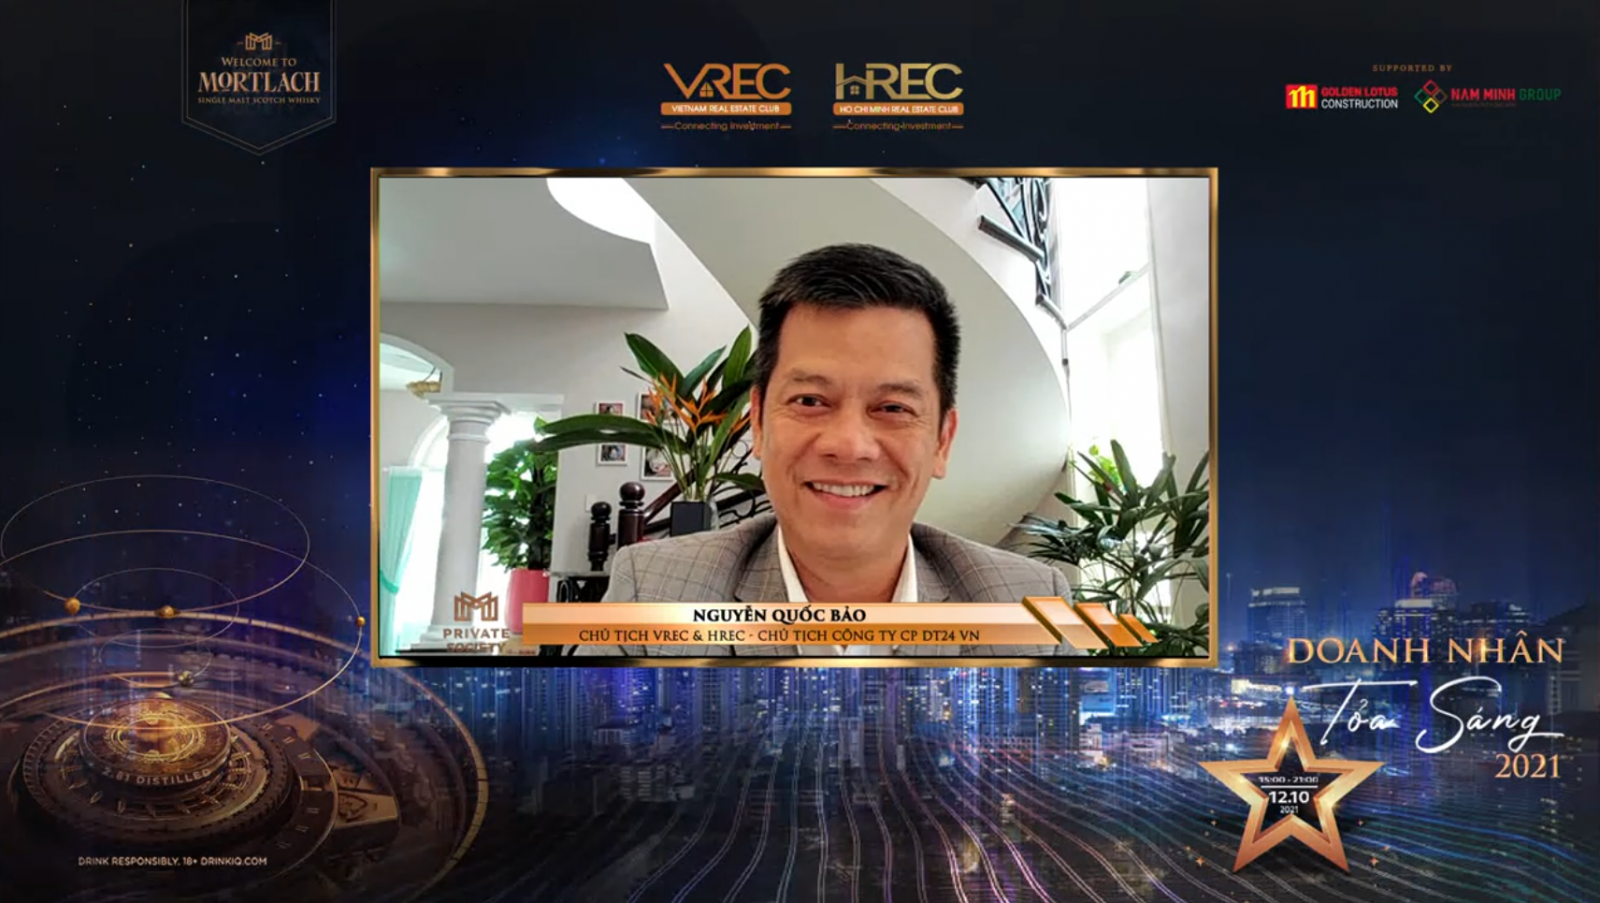 Ông Nguyễn Quốc Bảo - Chủ tịch Câu lạc bộ Bất động sản VREC & HREC chia sẻ tại Hội thảo trực tuyến